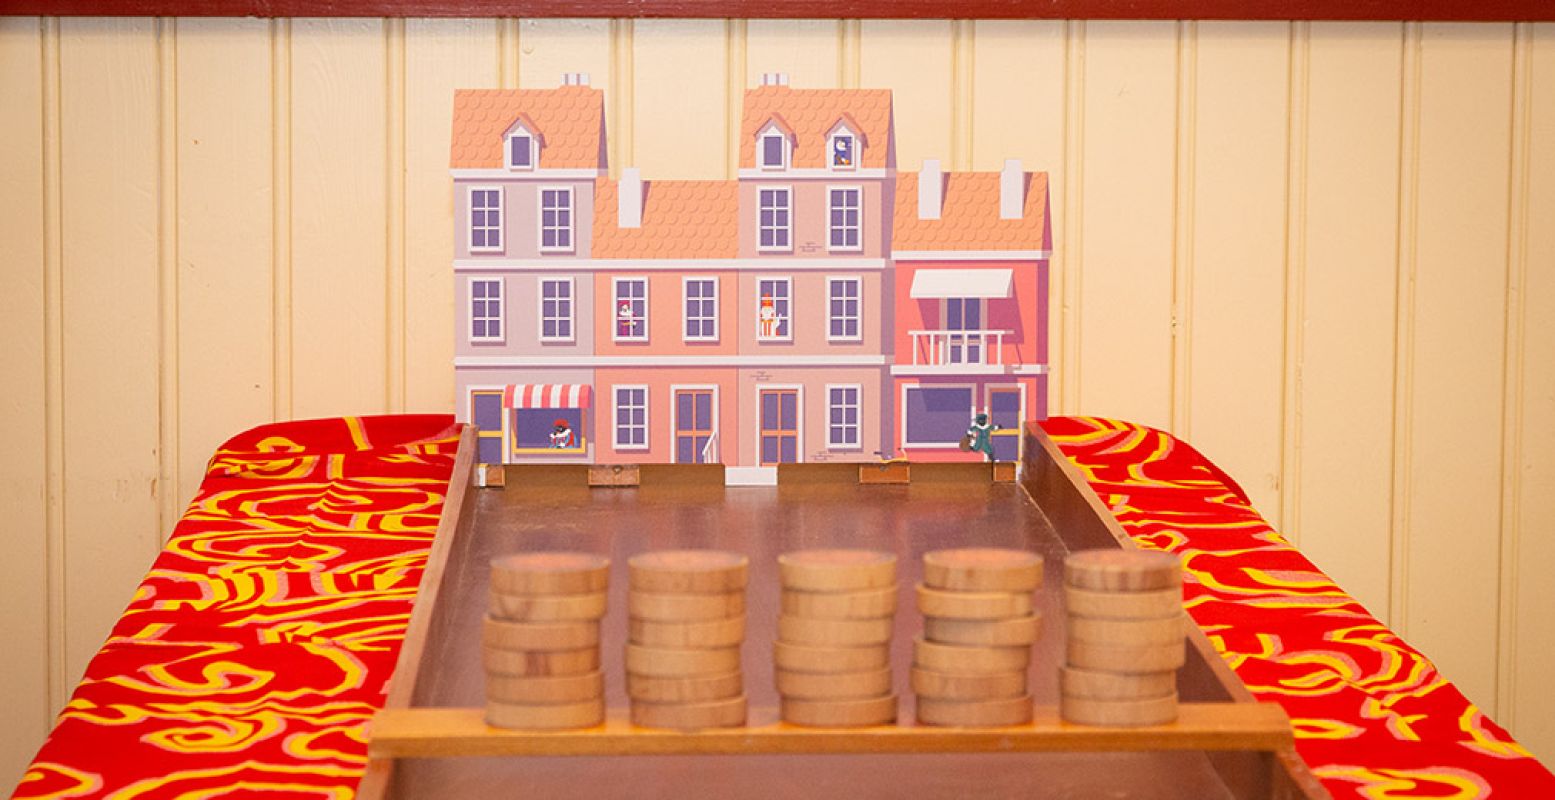 De sjoelbak staat klaar. En de pepernoten ook. Foto: Nationaal Sinterklaasmuseum